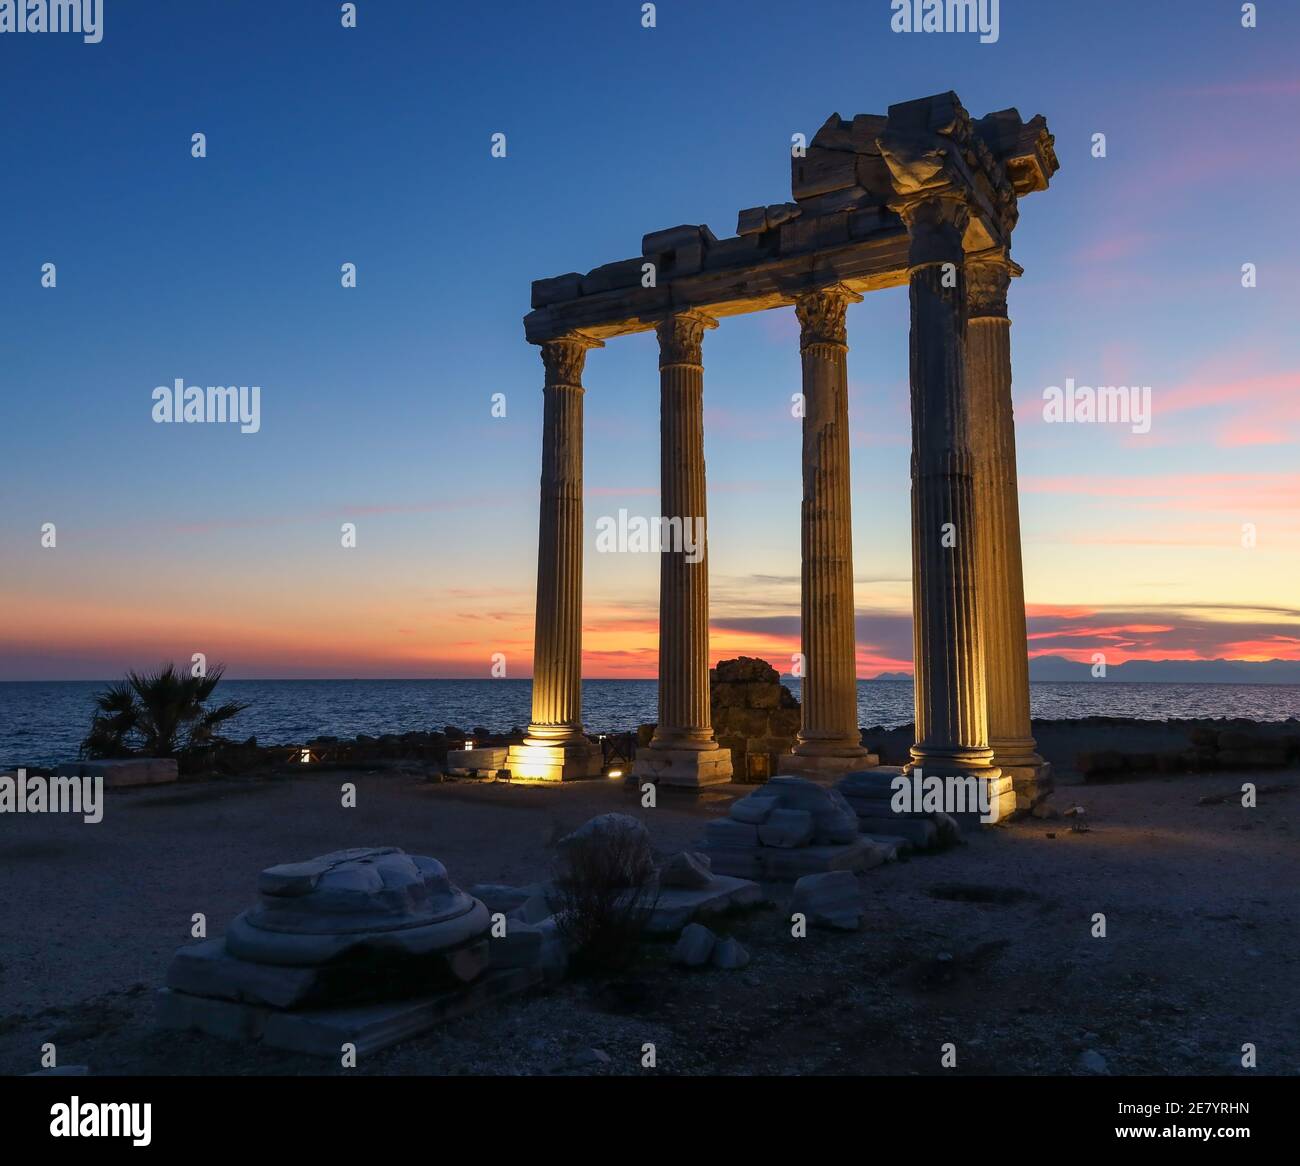 Tempio di Apollo al tramonto, antiche colonne storiche greche in marmo antico nella Turchia di Side Antalya Foto Stock